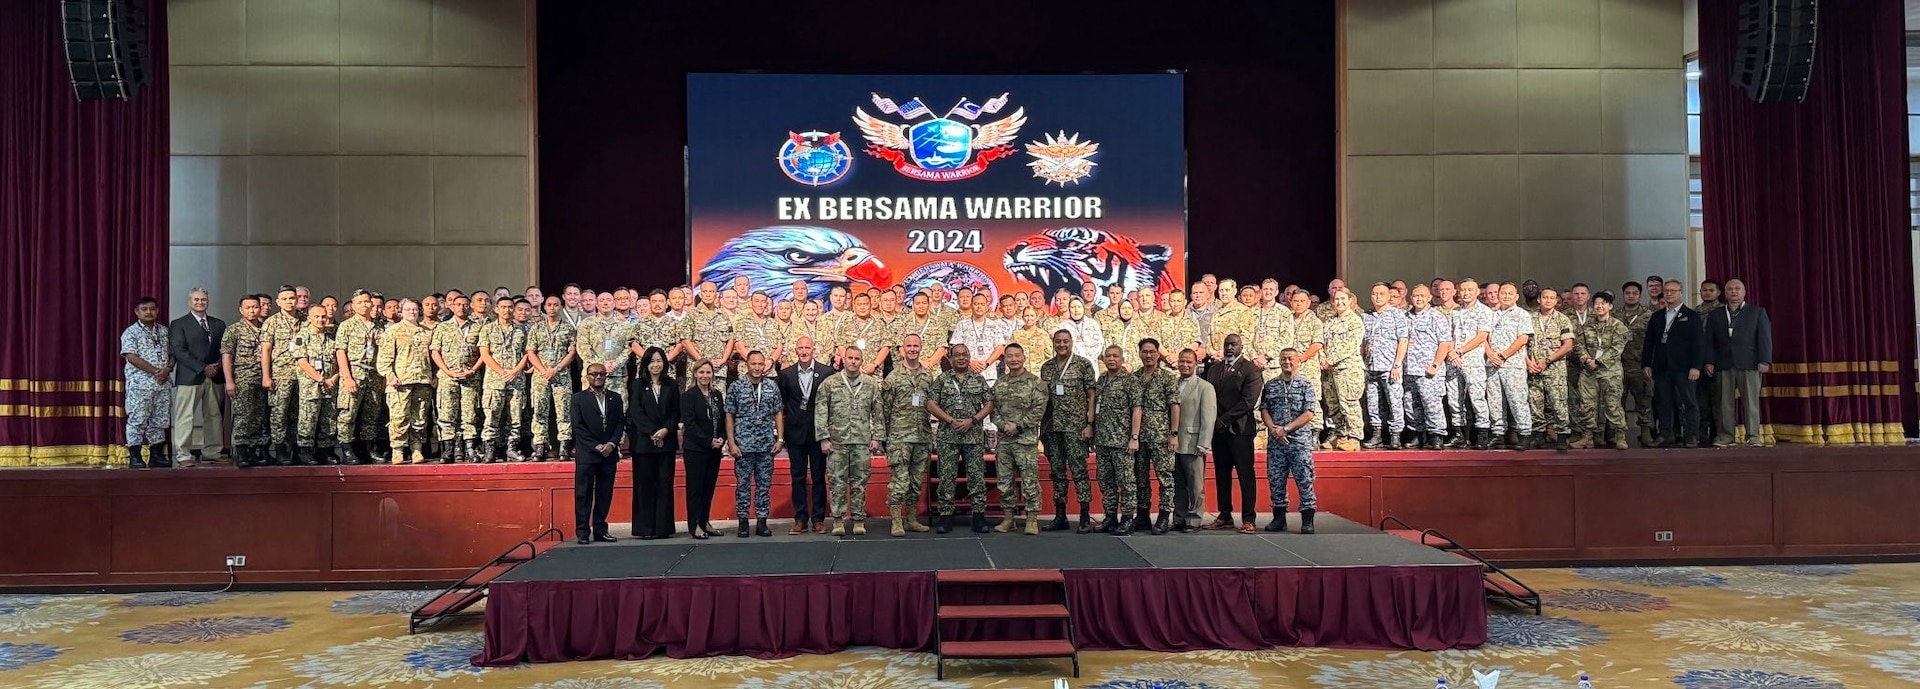 马来西亚与华盛顿卫队在 2024 年 Bersama Warrior 比赛中加强伙伴关系